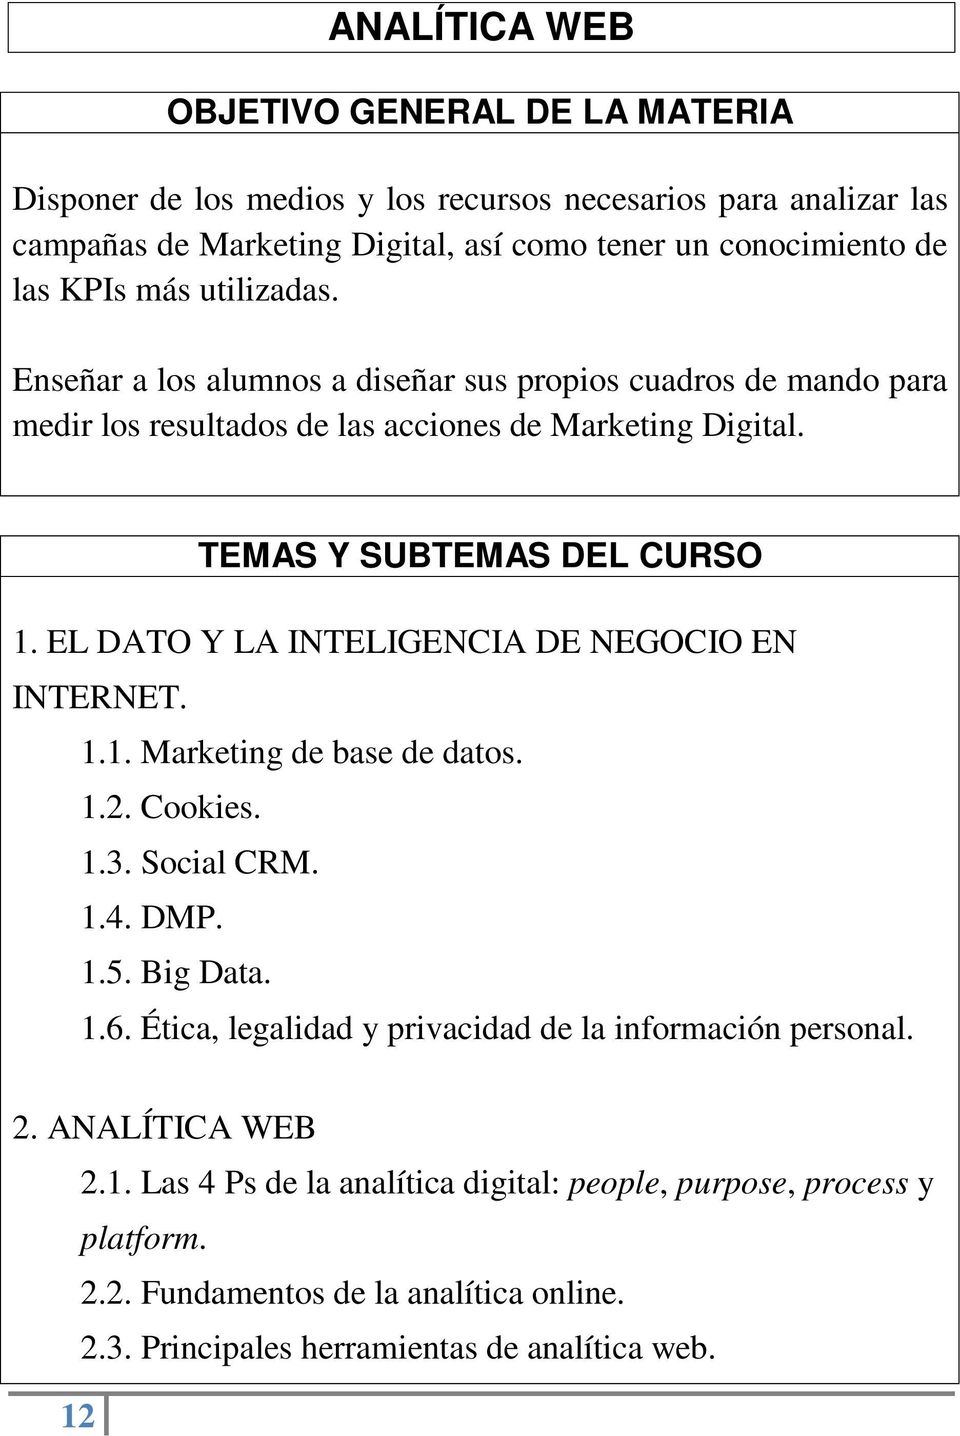 EL DATO Y LA INTELIGENCIA DE NEGOCIO EN INTERNET. 1.1. Marketing de base de datos. 1.2. Cookies. 1.3. Social CRM. 1.4. DMP. 1.5. Big Data. 1.6.